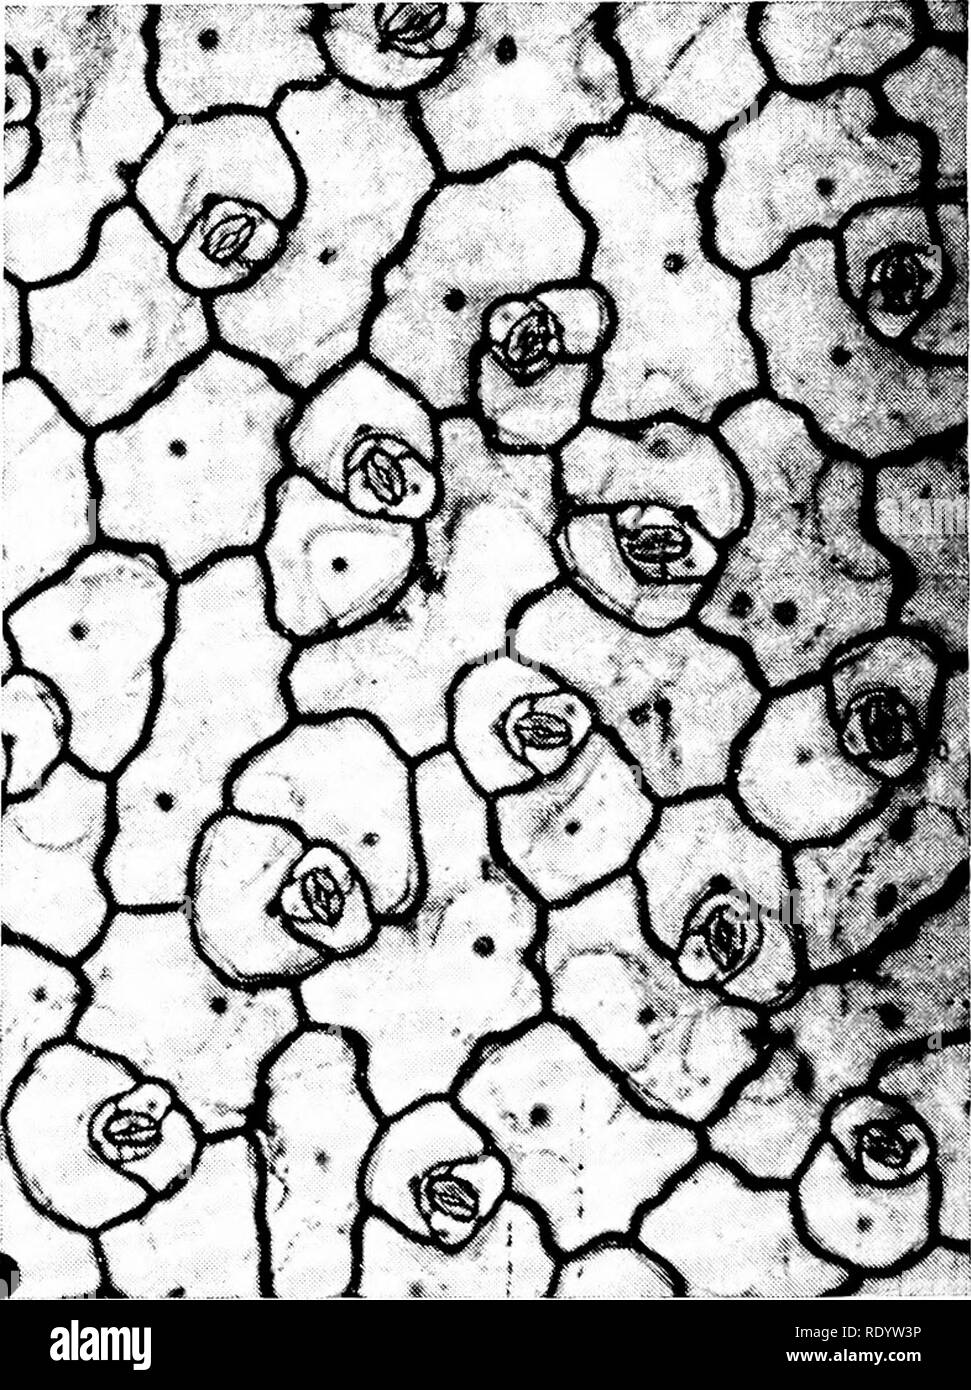 . Grundsätze der modernen Biologie. Biologie. 242 - vielzelligen Pflanzen storage Gewebezellen chloroplasten besitzen und weiterhin auf die Photosynthese als sec ondary Funktion auszuführen; und das vaskuläre Gewebe von Moosen ist eines sehr primitiven Typ, der sich nicht auf die Effizienz der wahren vaskuläre Gewebe (s. Ansatz 244) der Farn- und Samenpflanzen. Übergangszeit ENTWICKLUNGEN: ÜBERLEGENHEIT DER SPOROPHYT GENERATION Unter den bryophyta Die gametophyte Generation zeigt eine begrenzte Eignung mit dem Land Umgebung fertig zu werden; und wenig Evolu-revolutionären Fortschritt wurde durch die in den letzten g Bryophyta Stockfoto